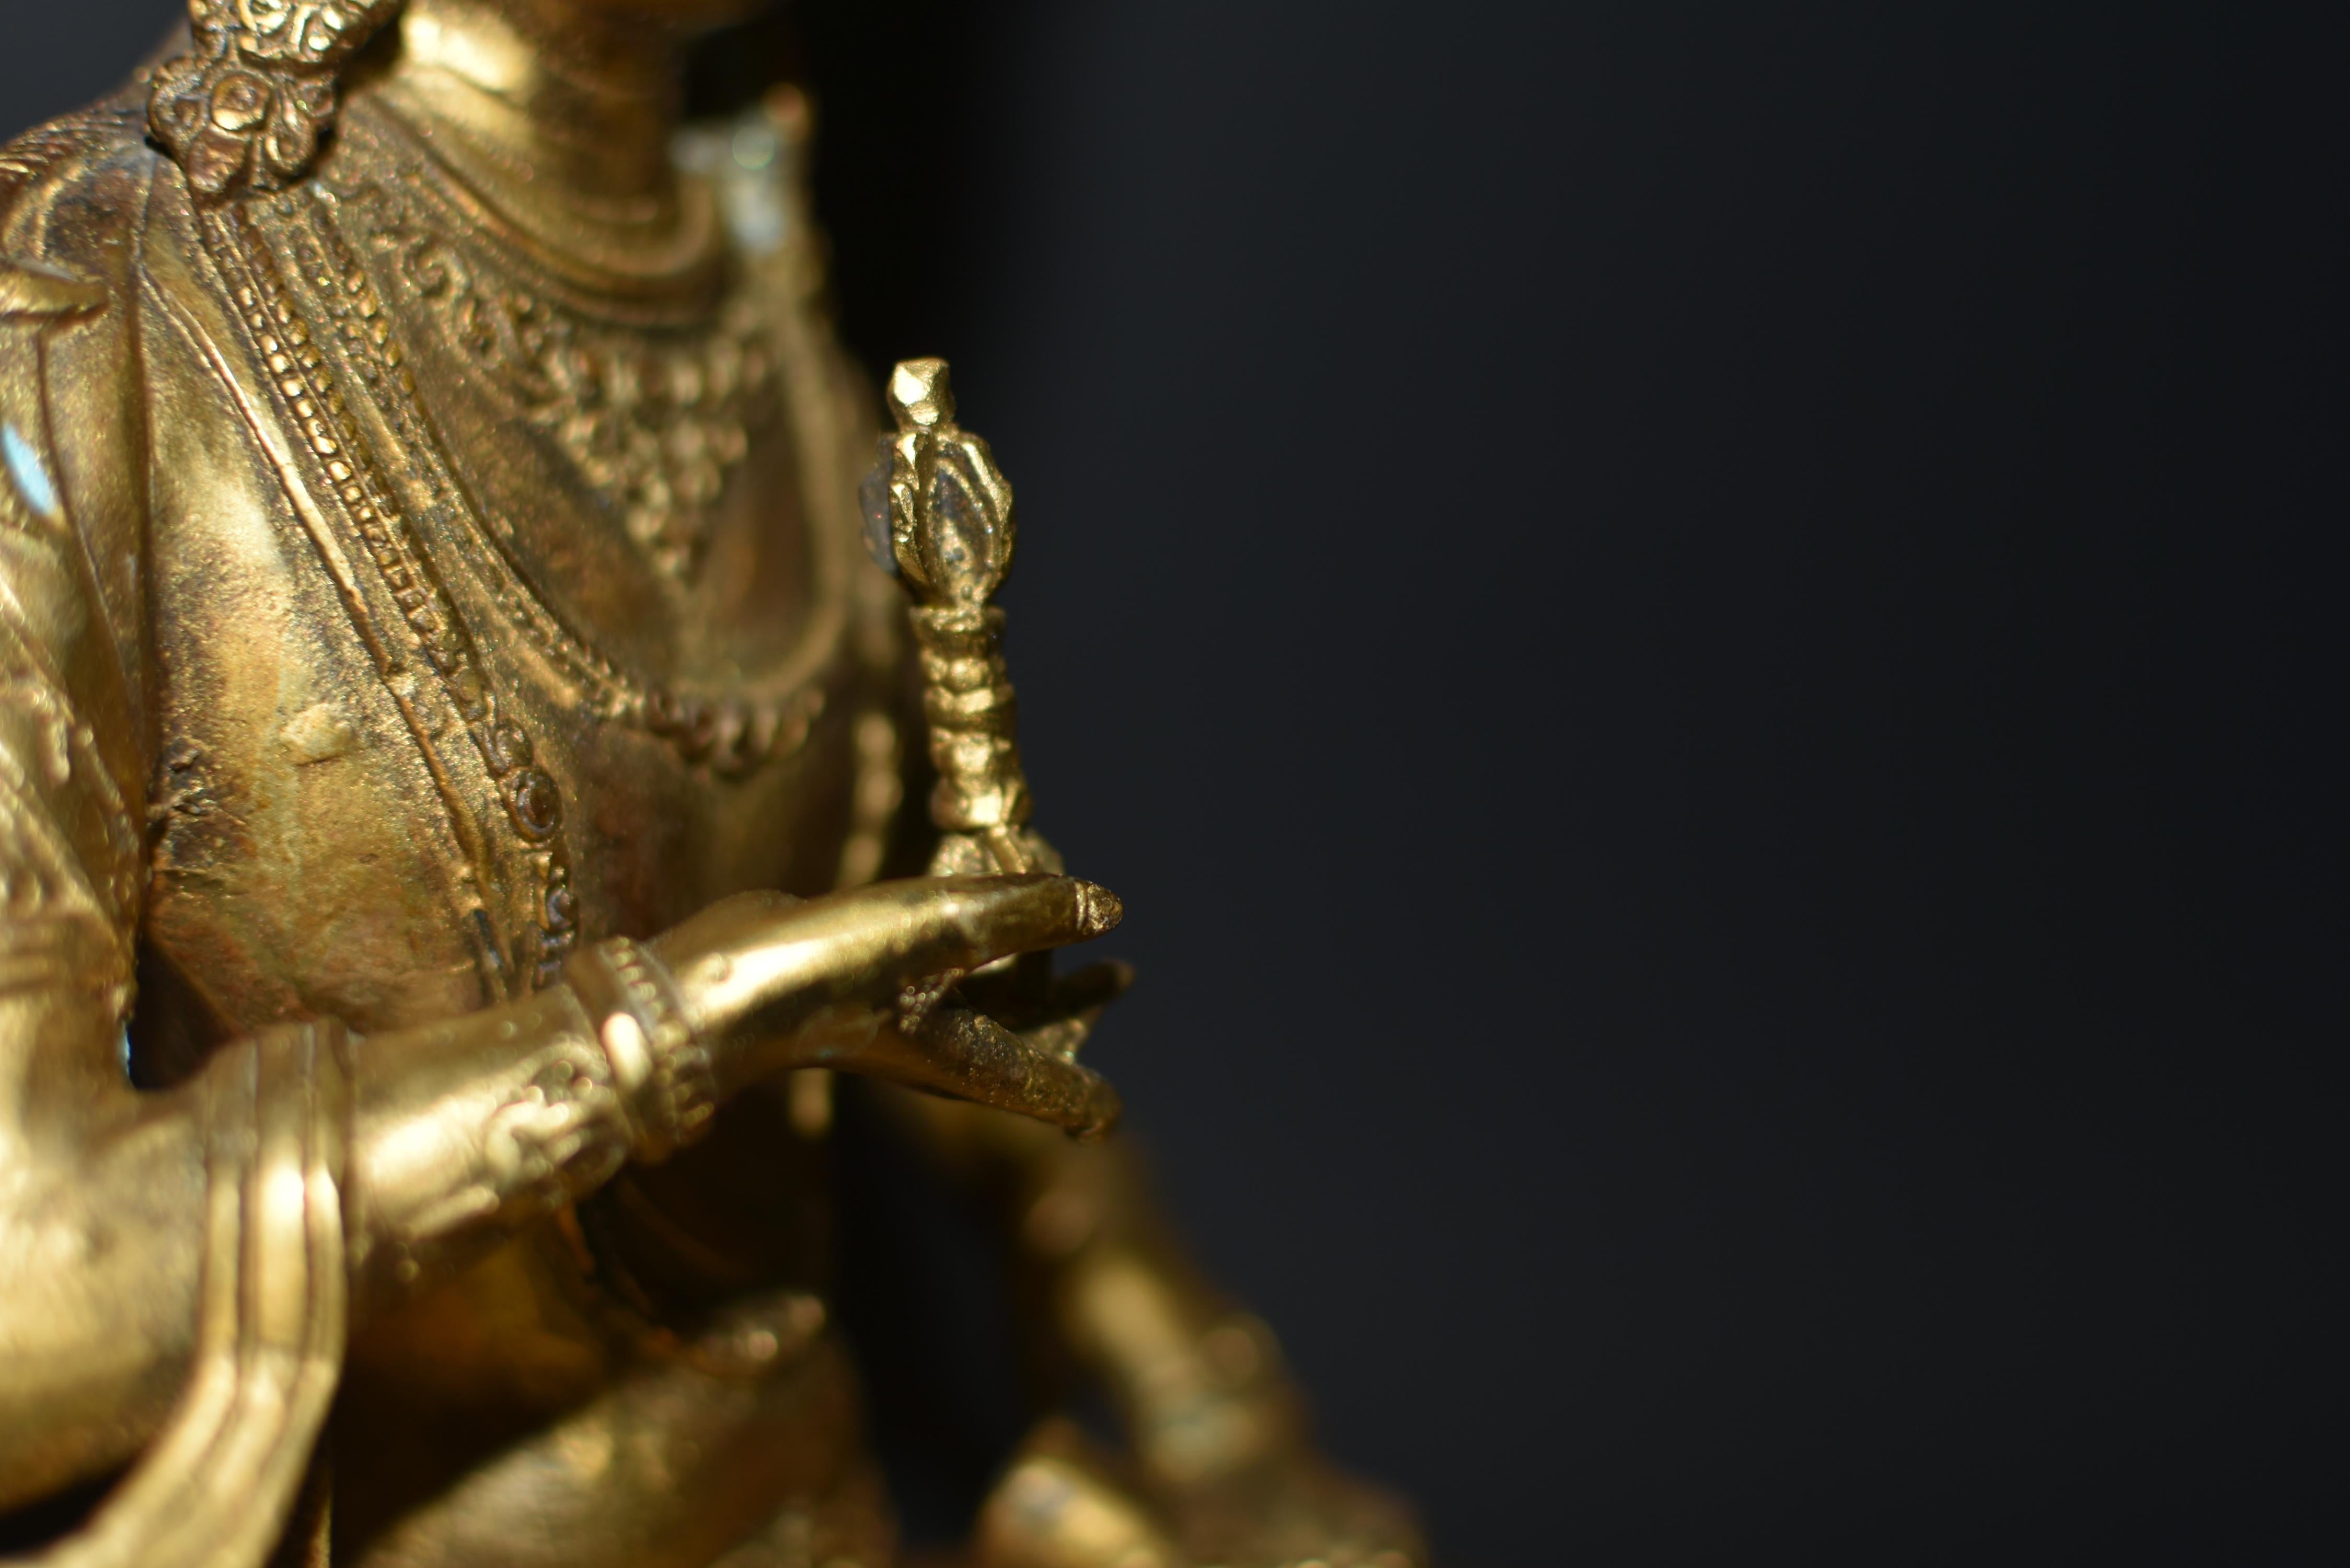 Tibetan Protective Buddha Vajrasattva Gilt Bronze 13